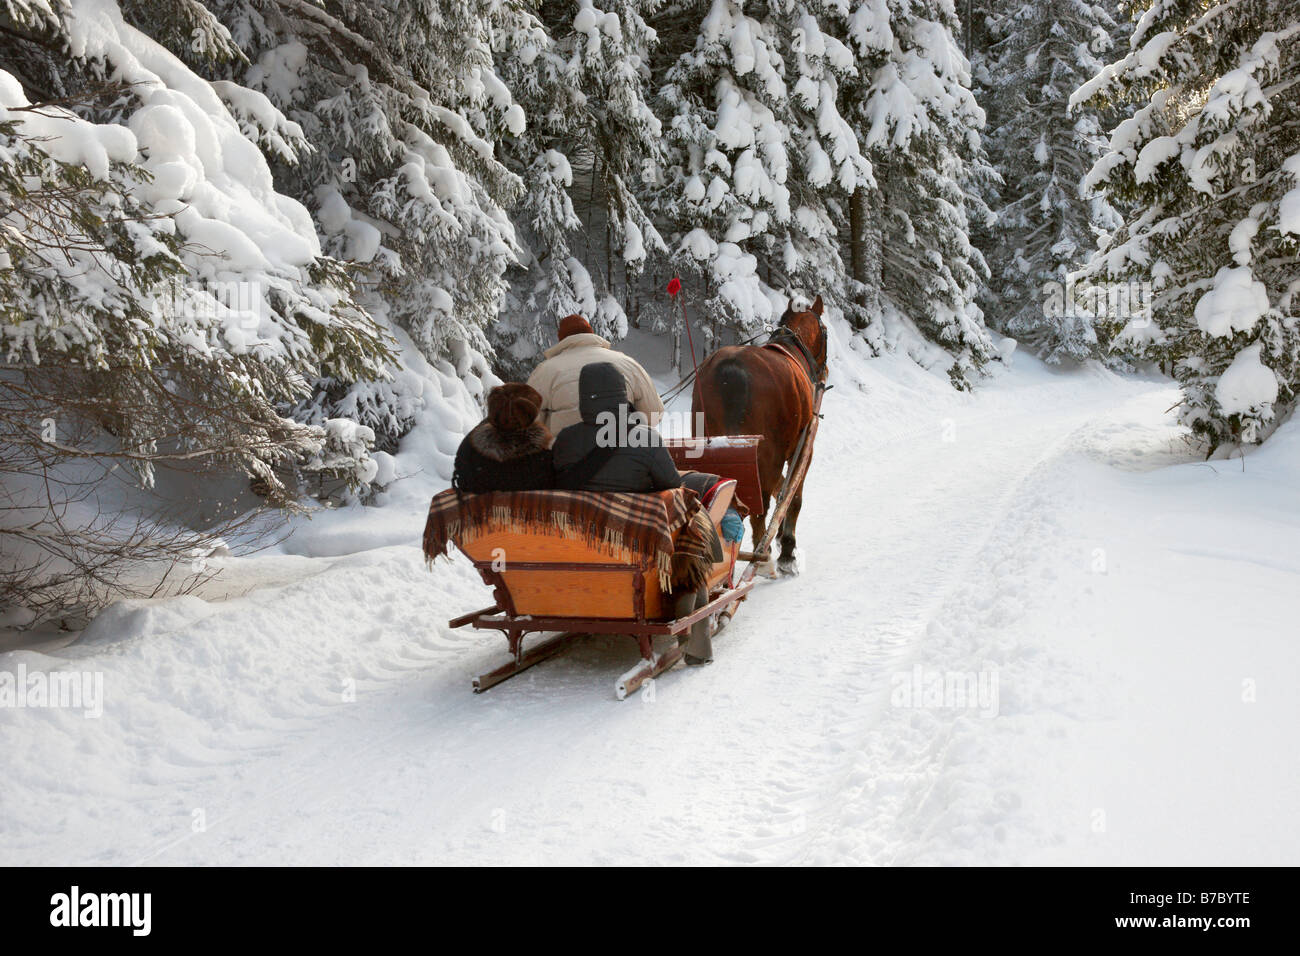 Sleigh ride in winter scenery, Tatra Mountains, Poland Stock Photo